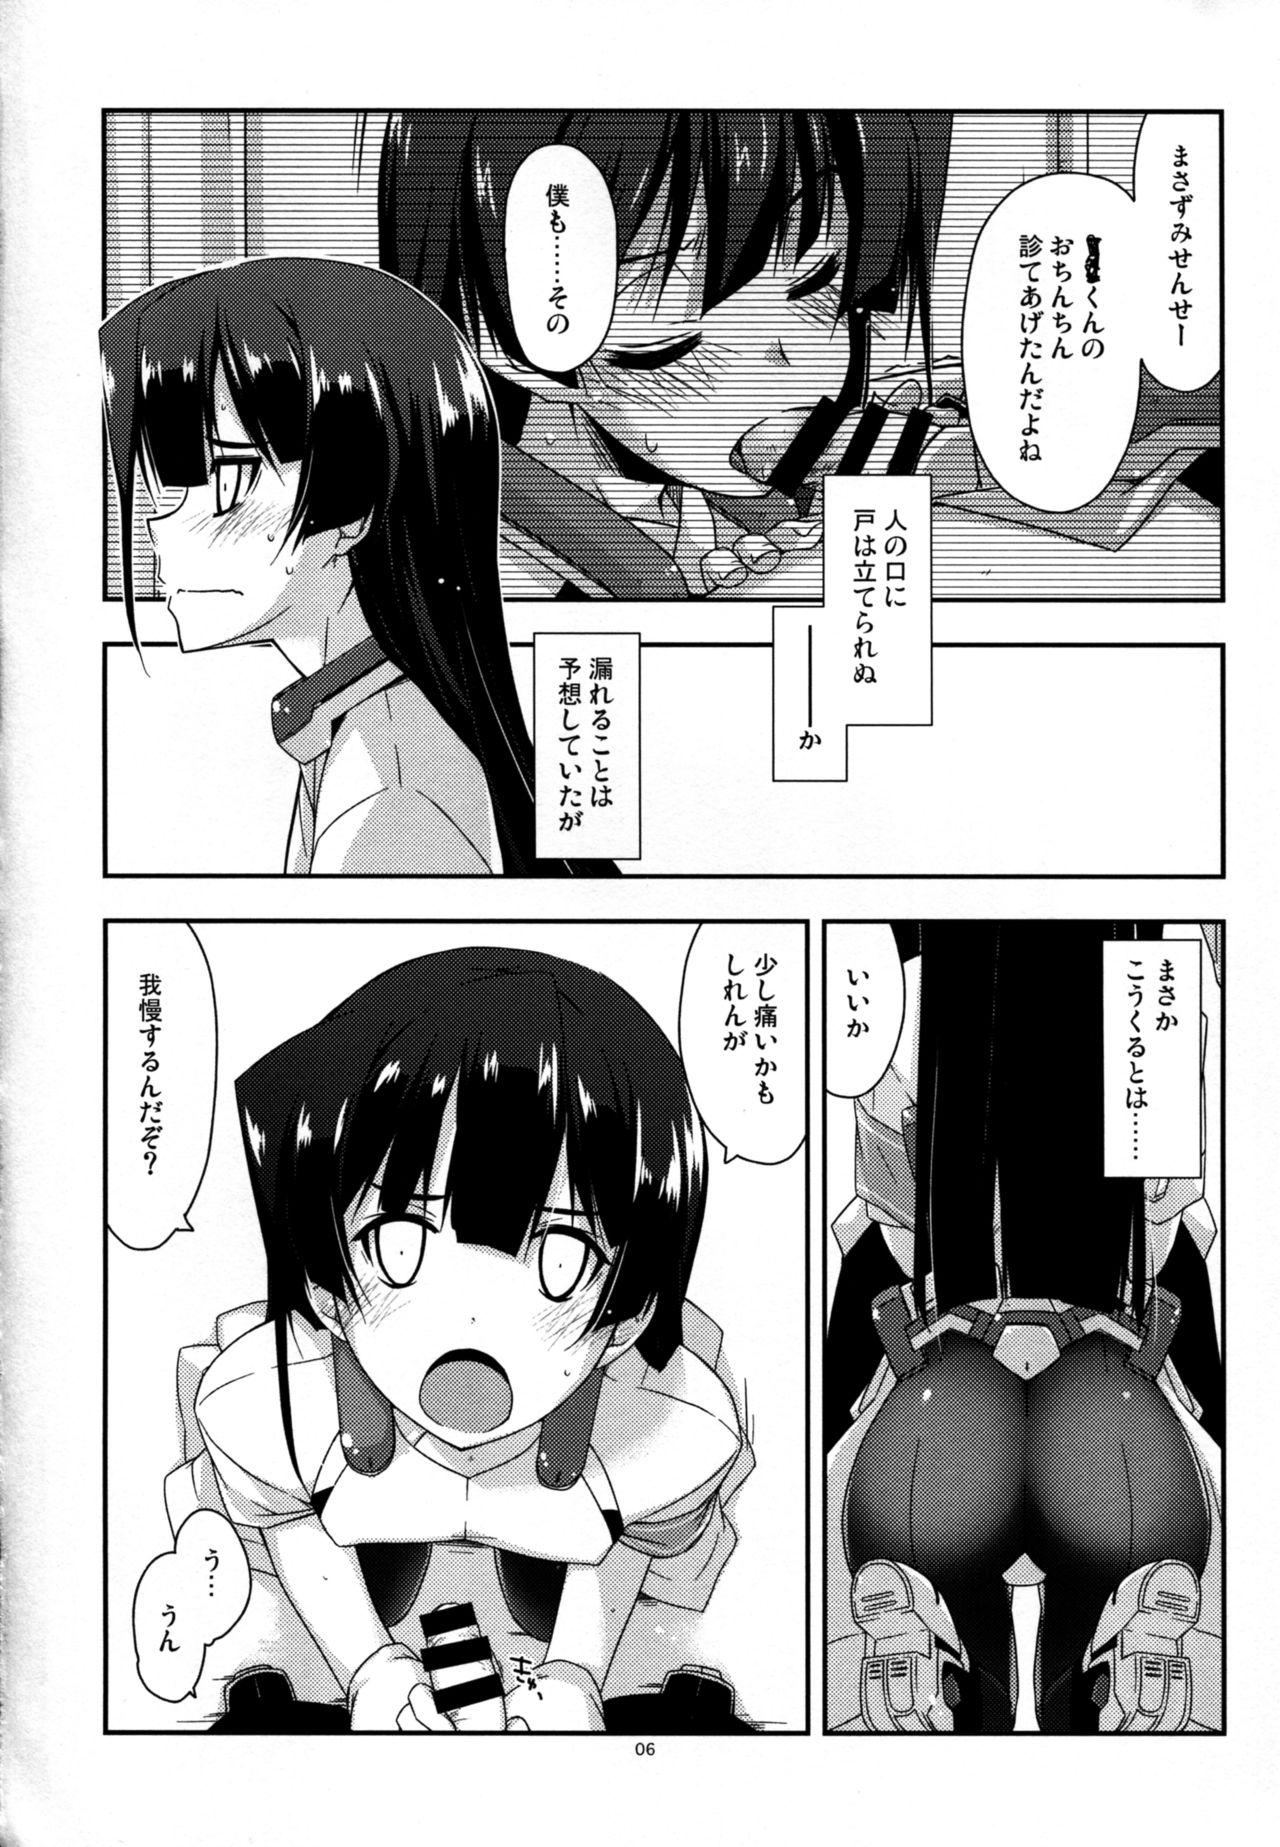 Shy Onegai! Masazumi Sensei - Kyoukai senjou no horizon Nice - Page 6